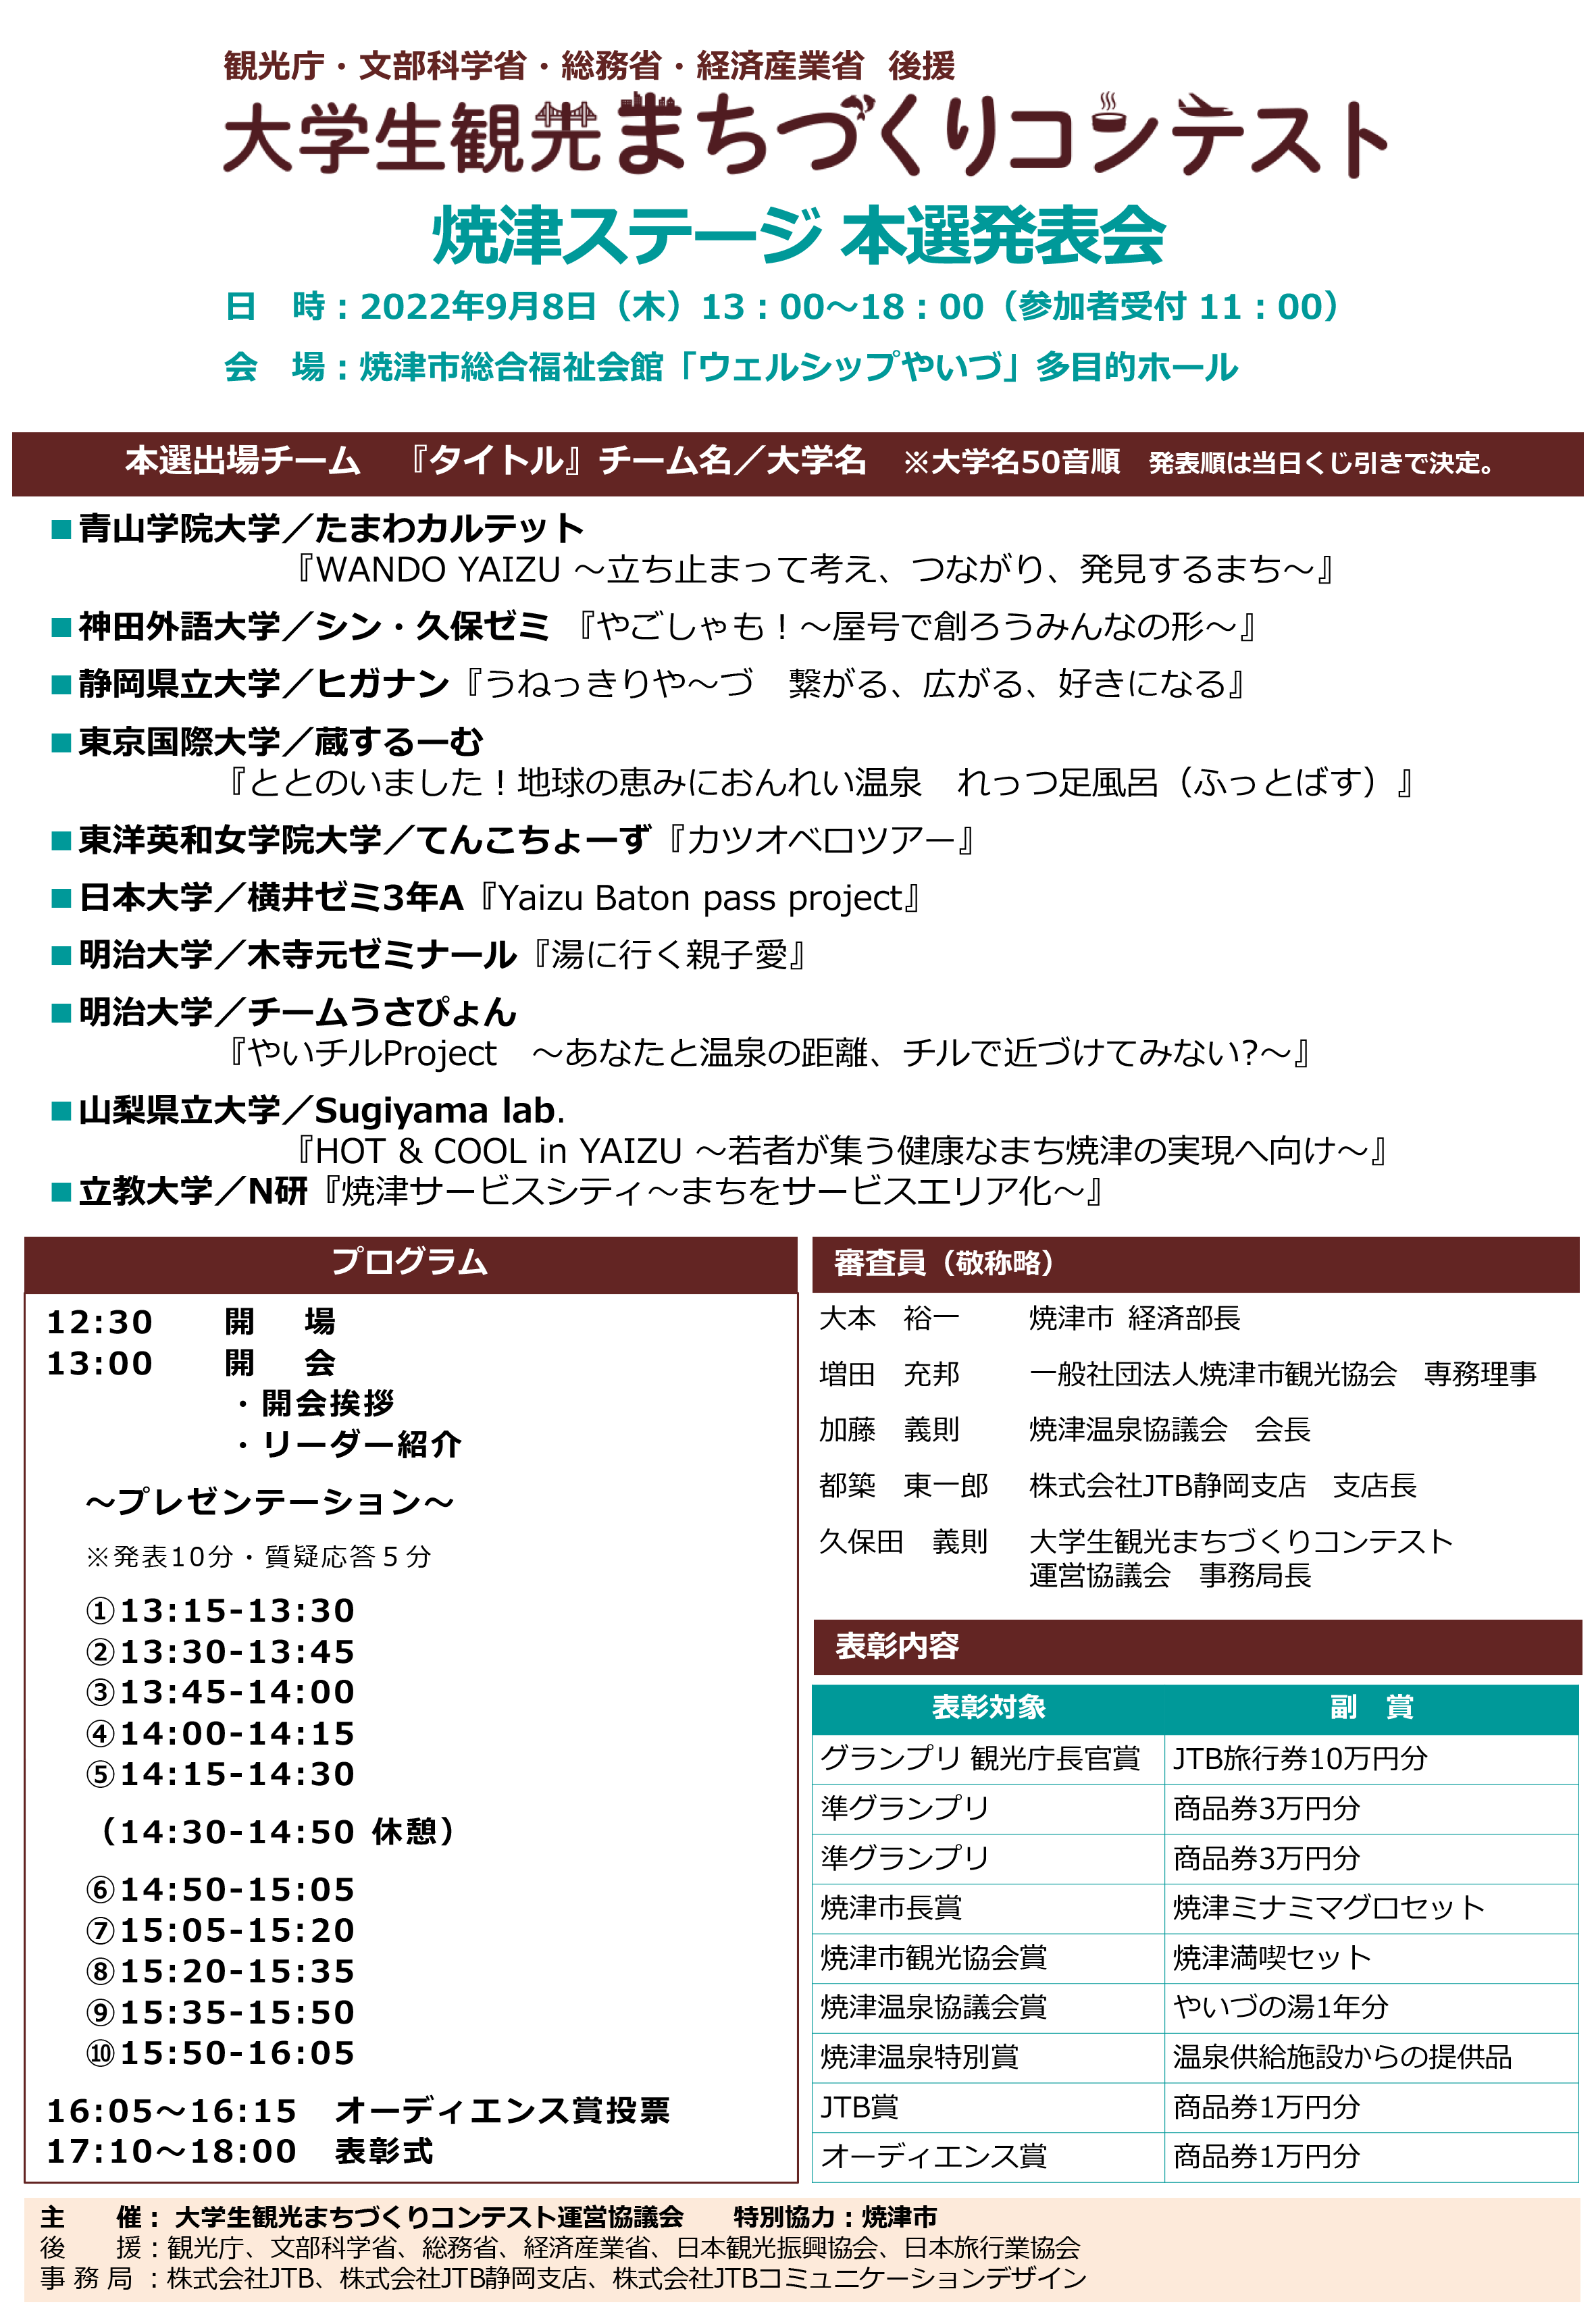 焼津ステージ本選発表会詳細